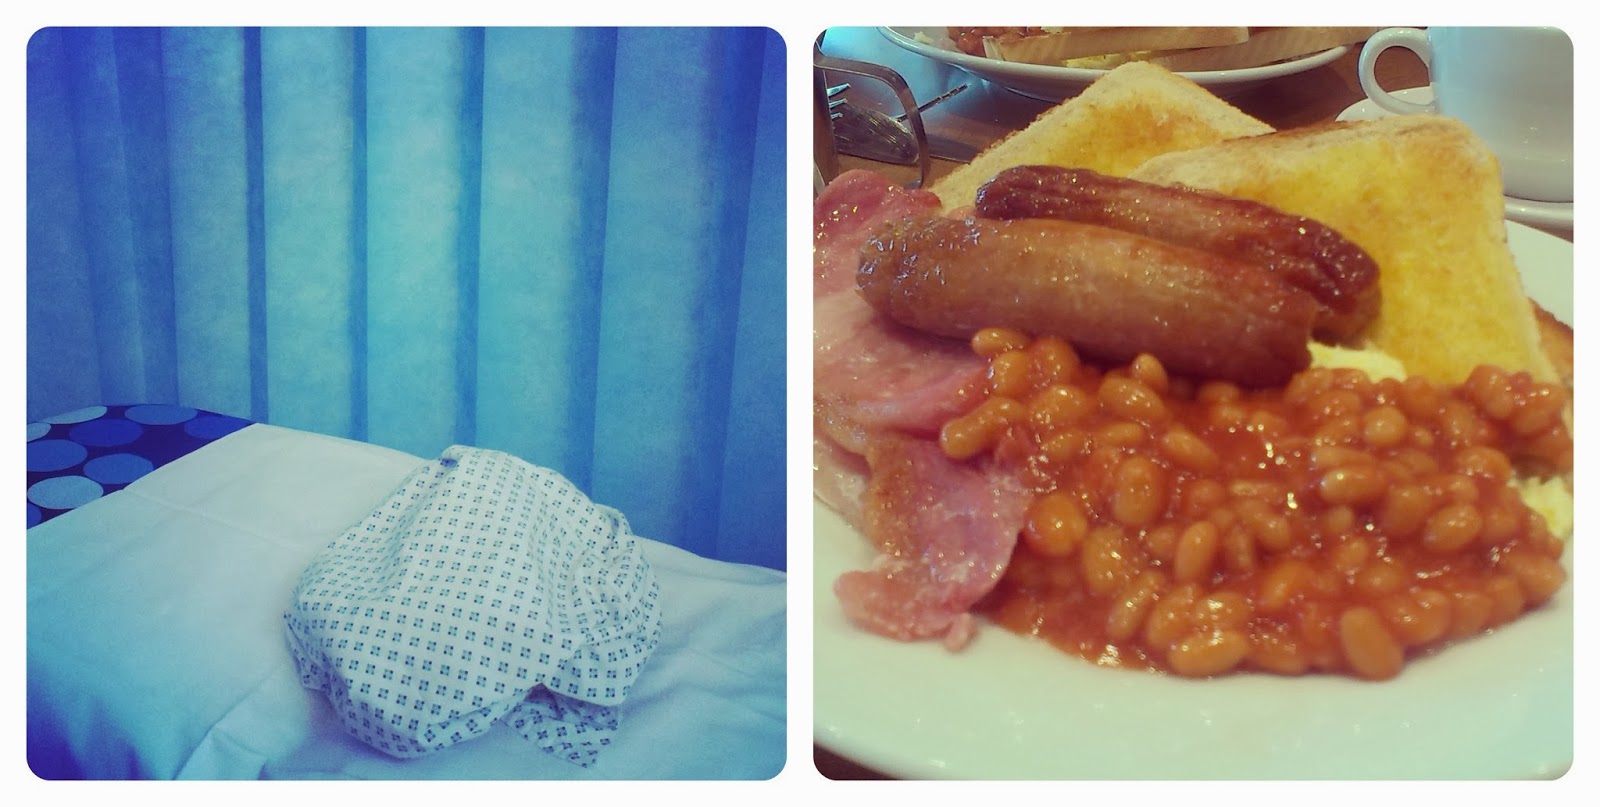 Hospital bed - Fried breakfast